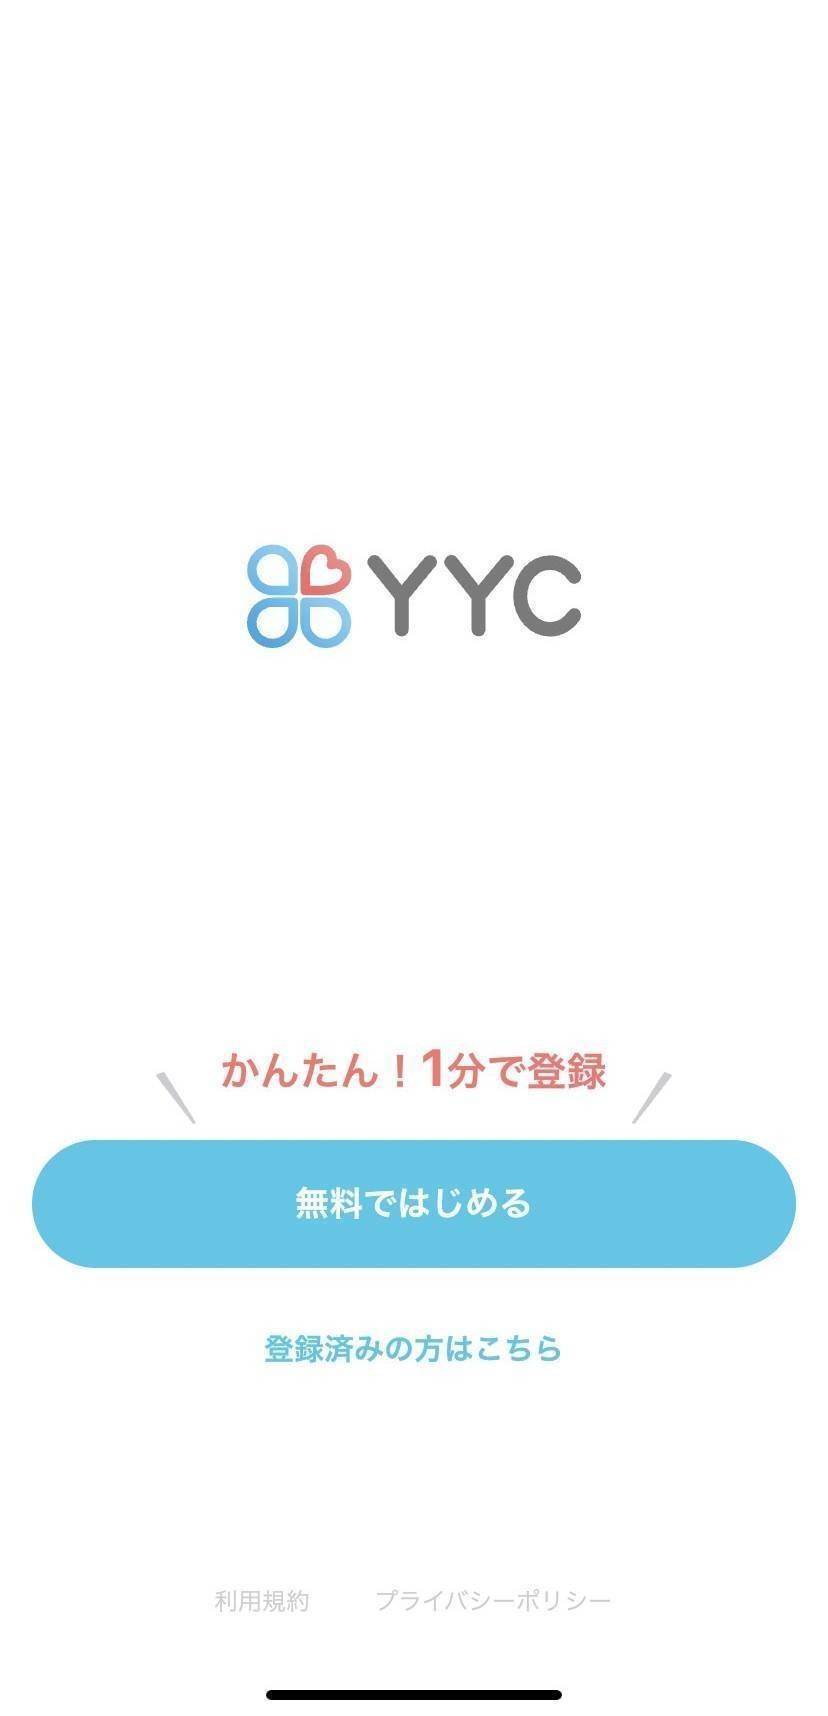 『YYC』